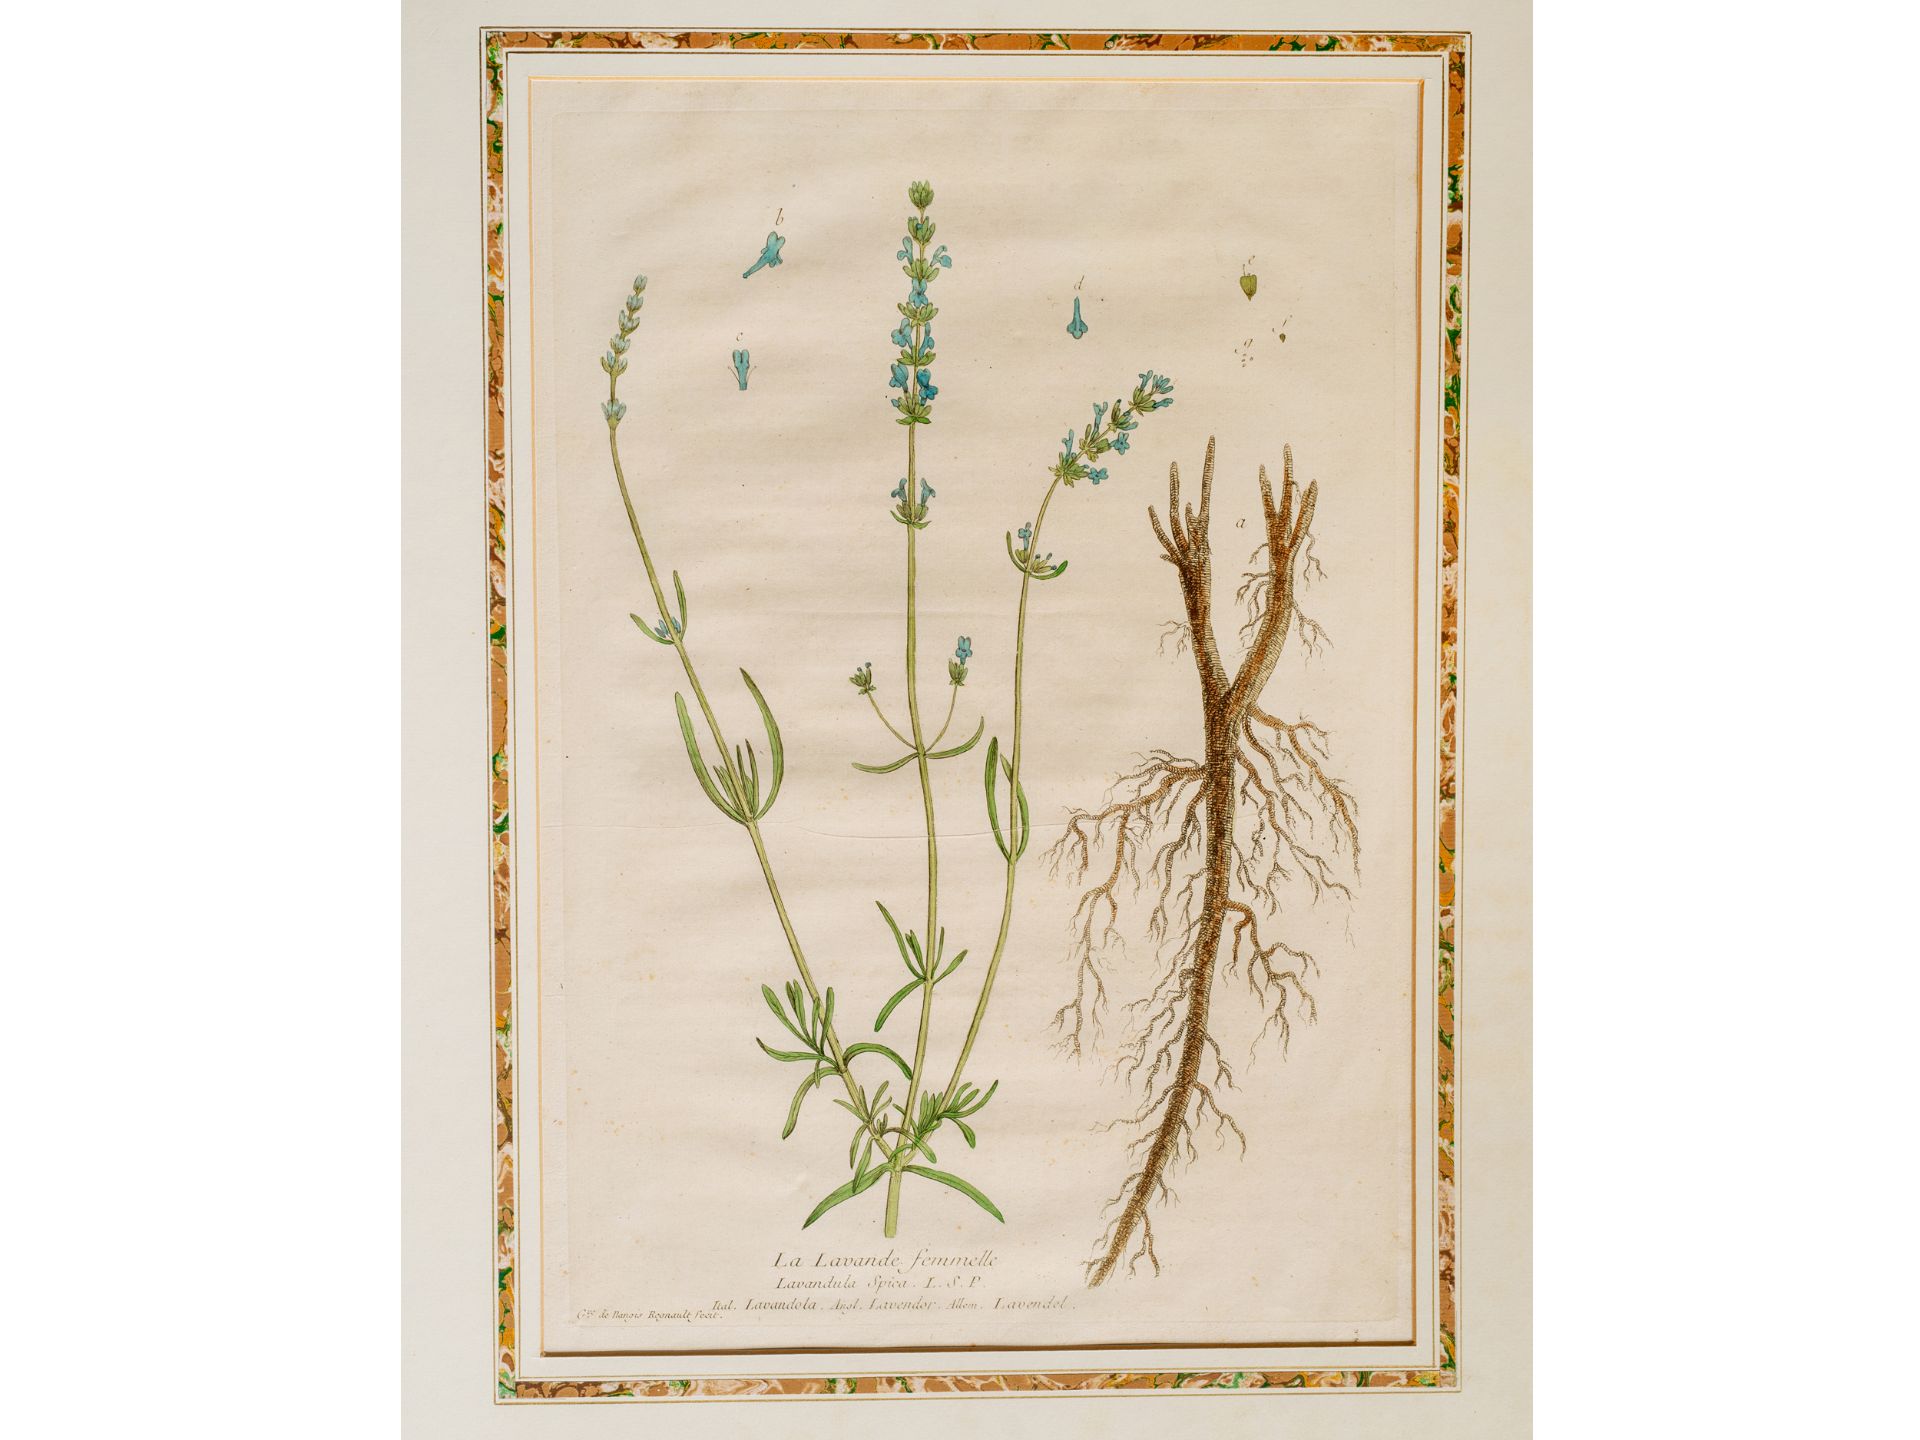 "La Lavande femmelle" (Lavender), Plate from botanical manuscript